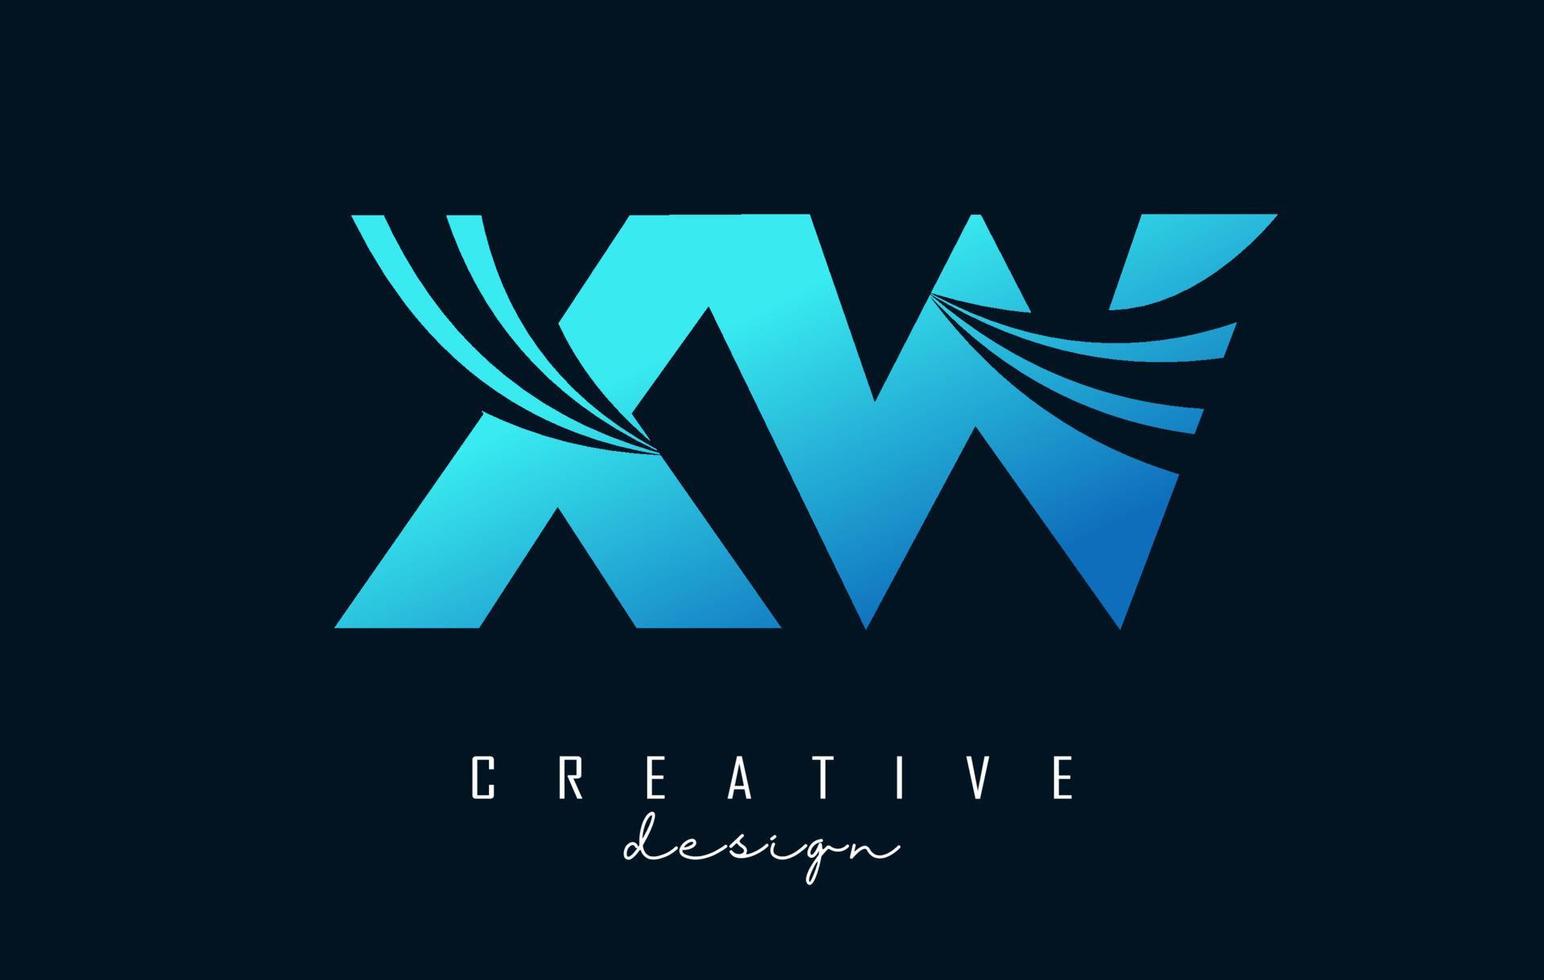 lettres bleues créatives logo xw xw avec lignes directrices et conception de concept de route. lettres avec un dessin géométrique. vecteur